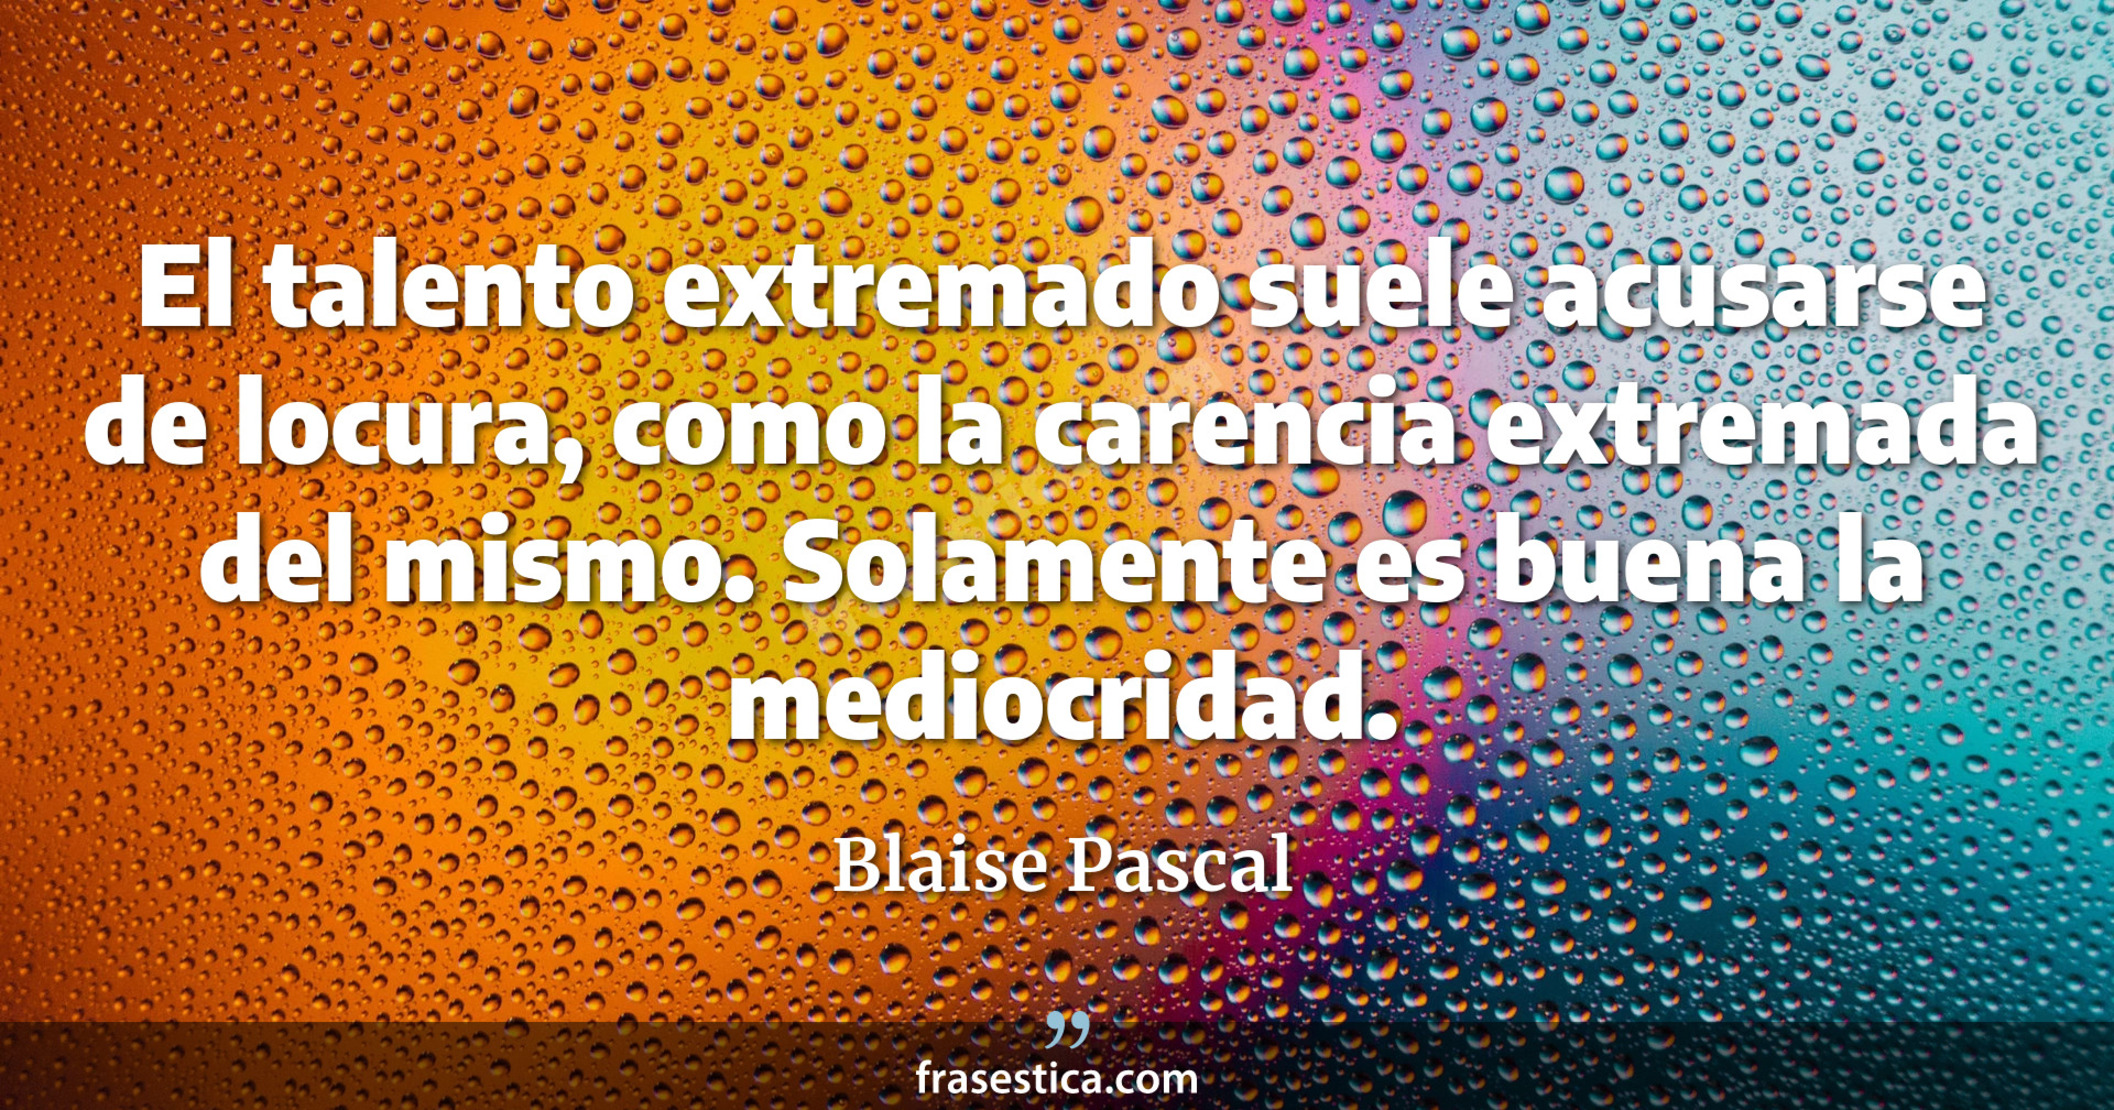 El talento extremado suele acusarse de locura, como la carencia extremada del mismo. Solamente es buena la mediocridad. - Blaise Pascal